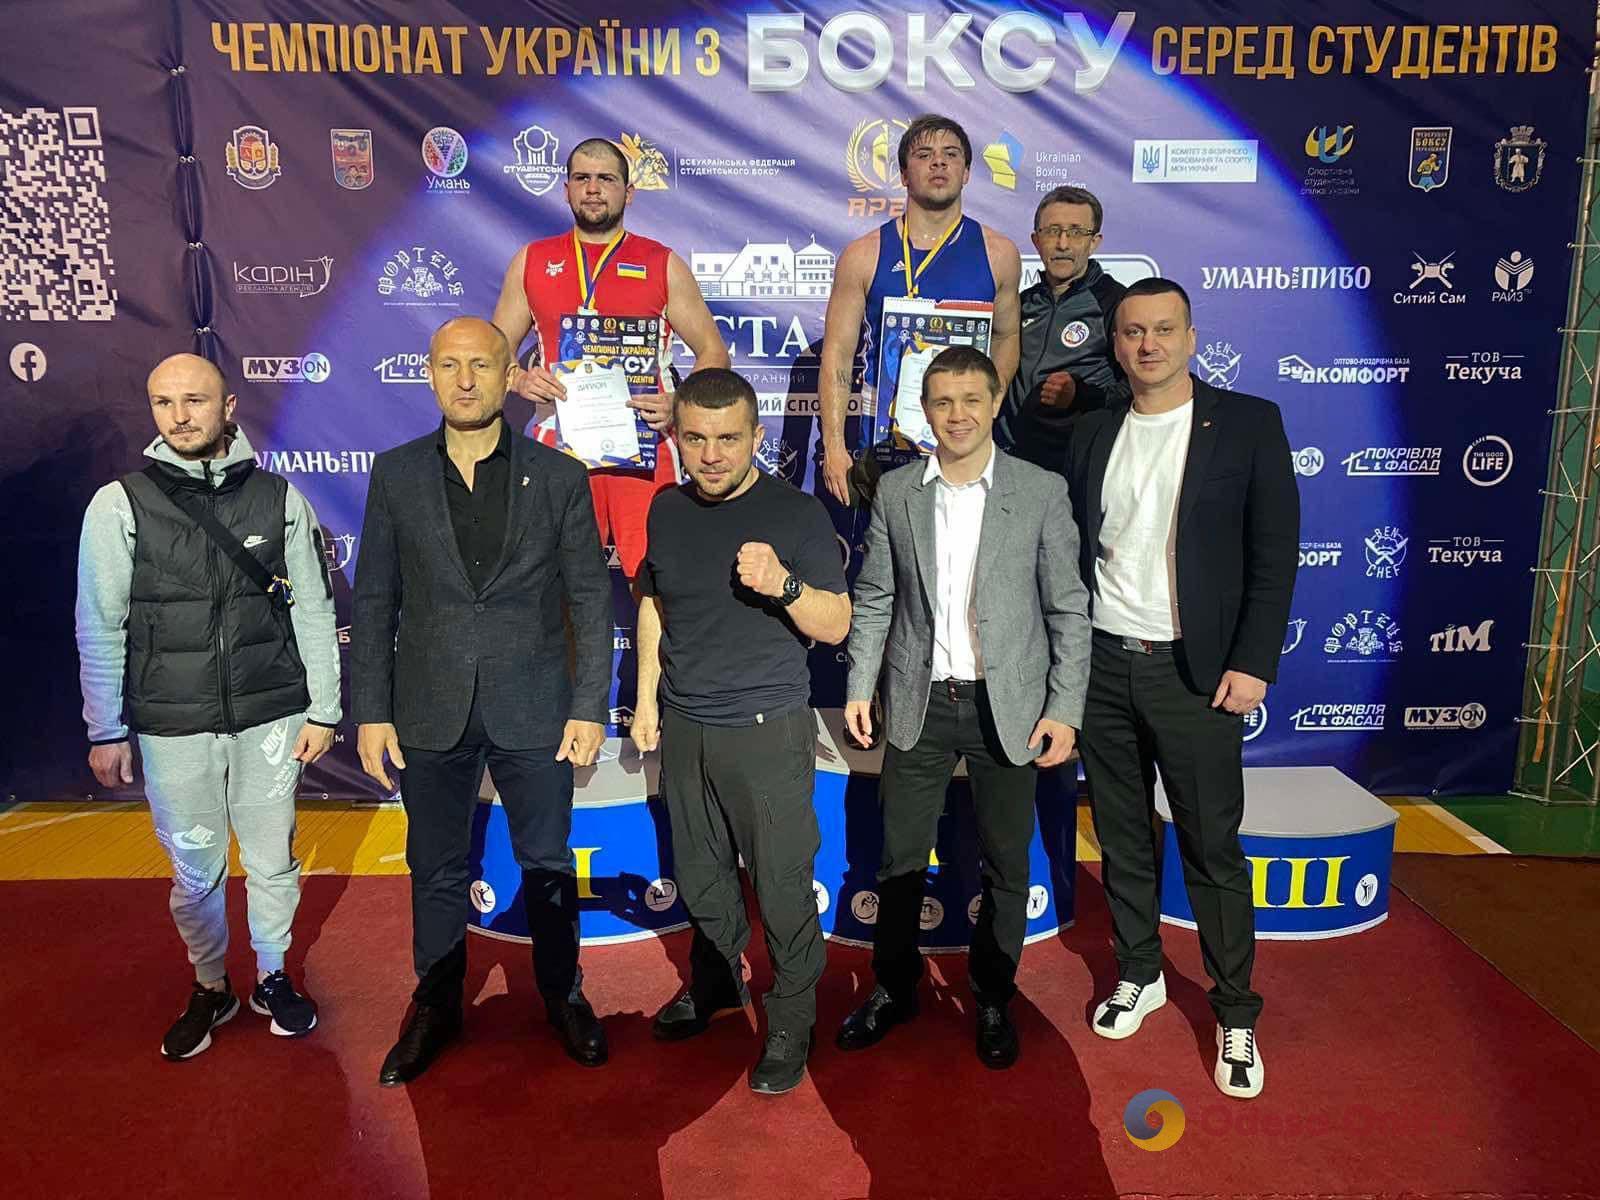 Одесские спортсмены вернулись с чемпионата Украины по боксу с четырьмя медалями